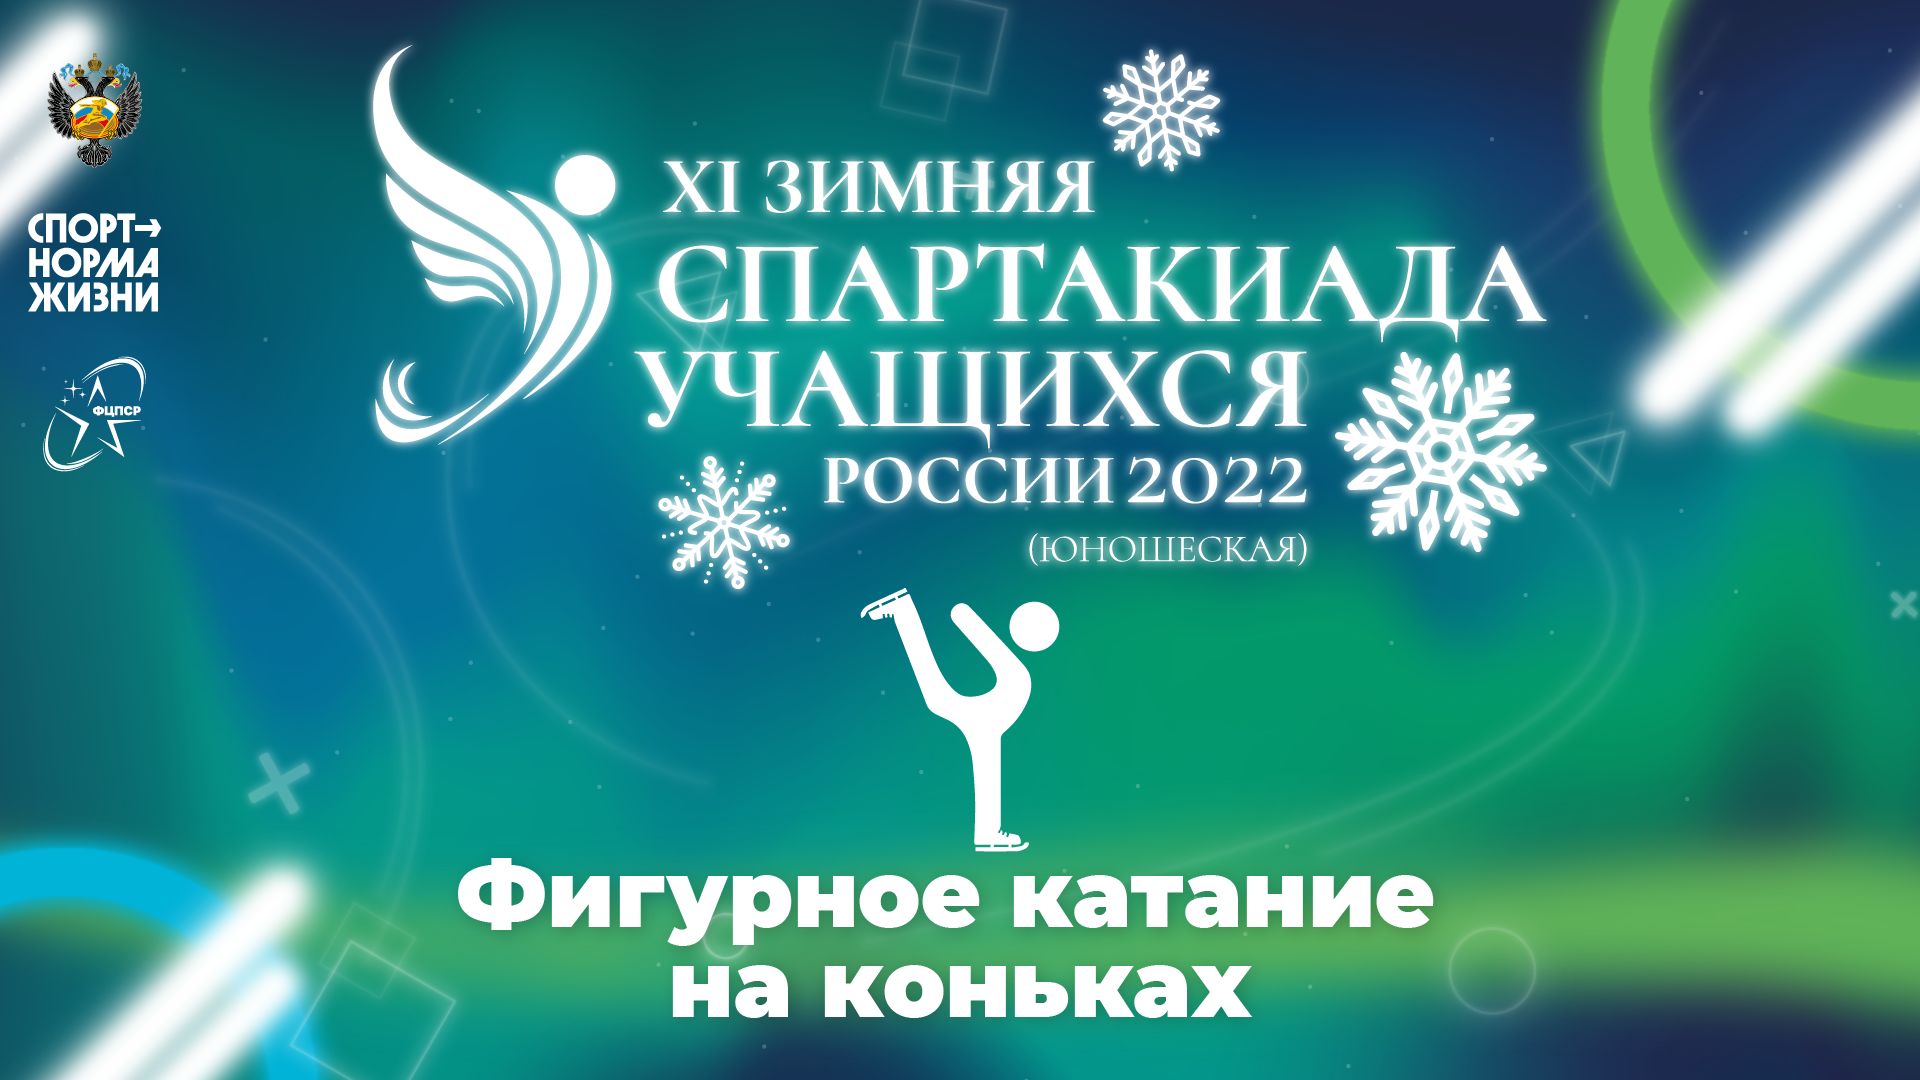 XI зимняя Спартакиада учащихся России 2022 года. Фигурное катание (Сочи)